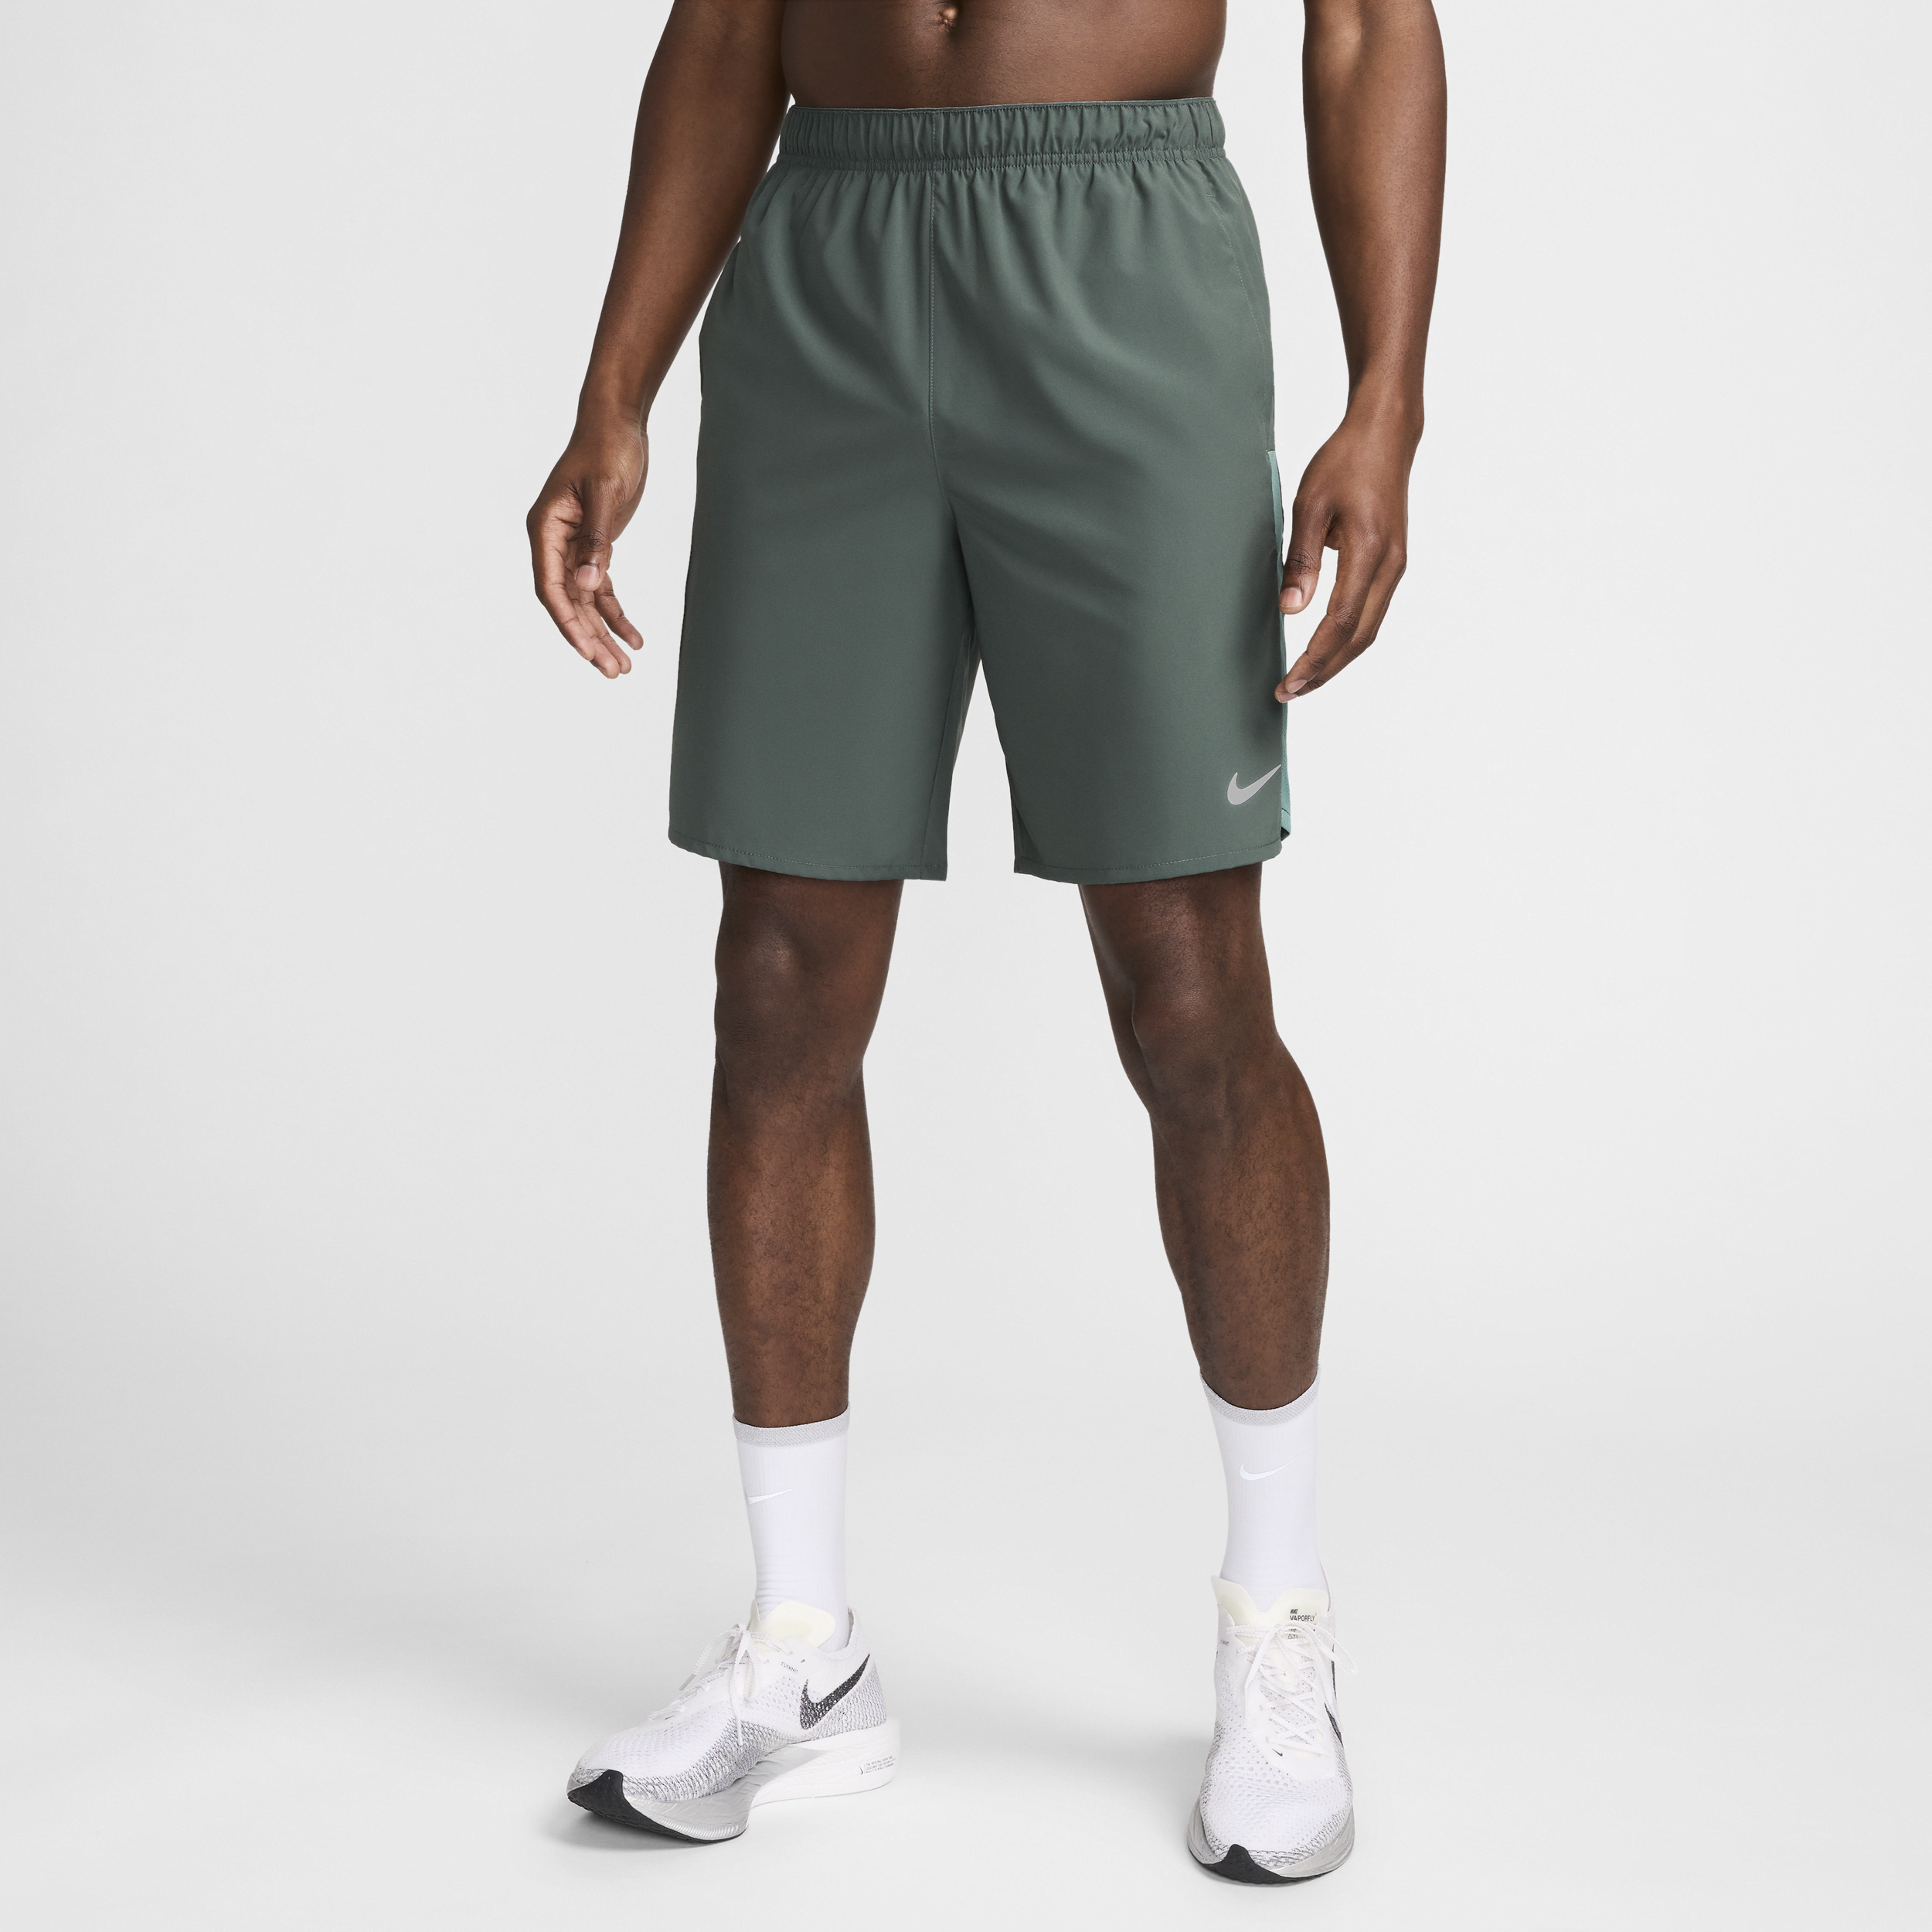 Alsidige Nike Challenger Dri-FIT-shorts (23 cm) uden for til mænd - grøn